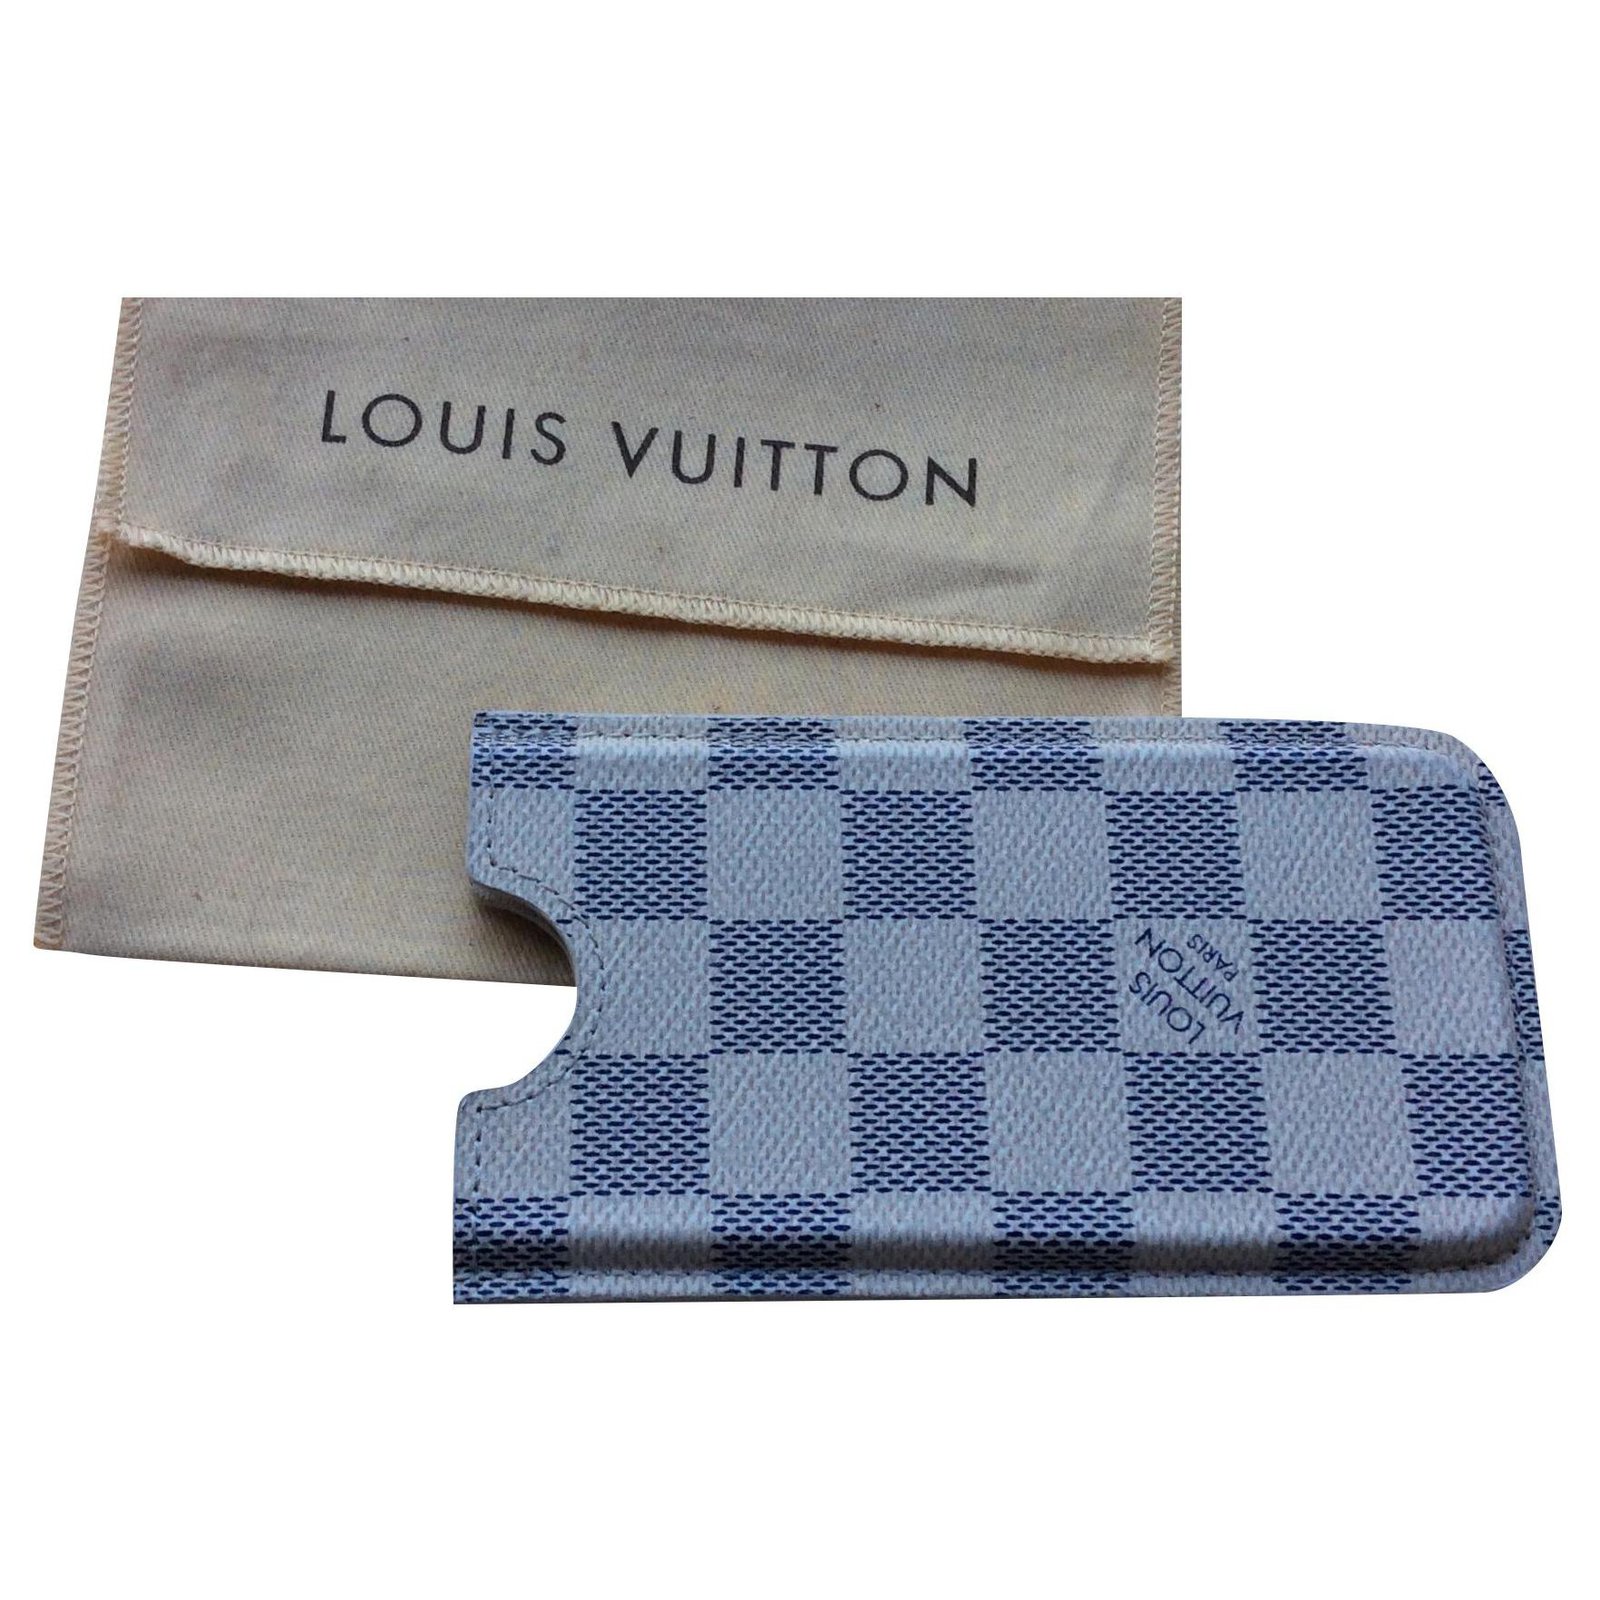 Louis Vuitton Louis Vuitton phone case Damier Azur canvas reconverted business card holder ...